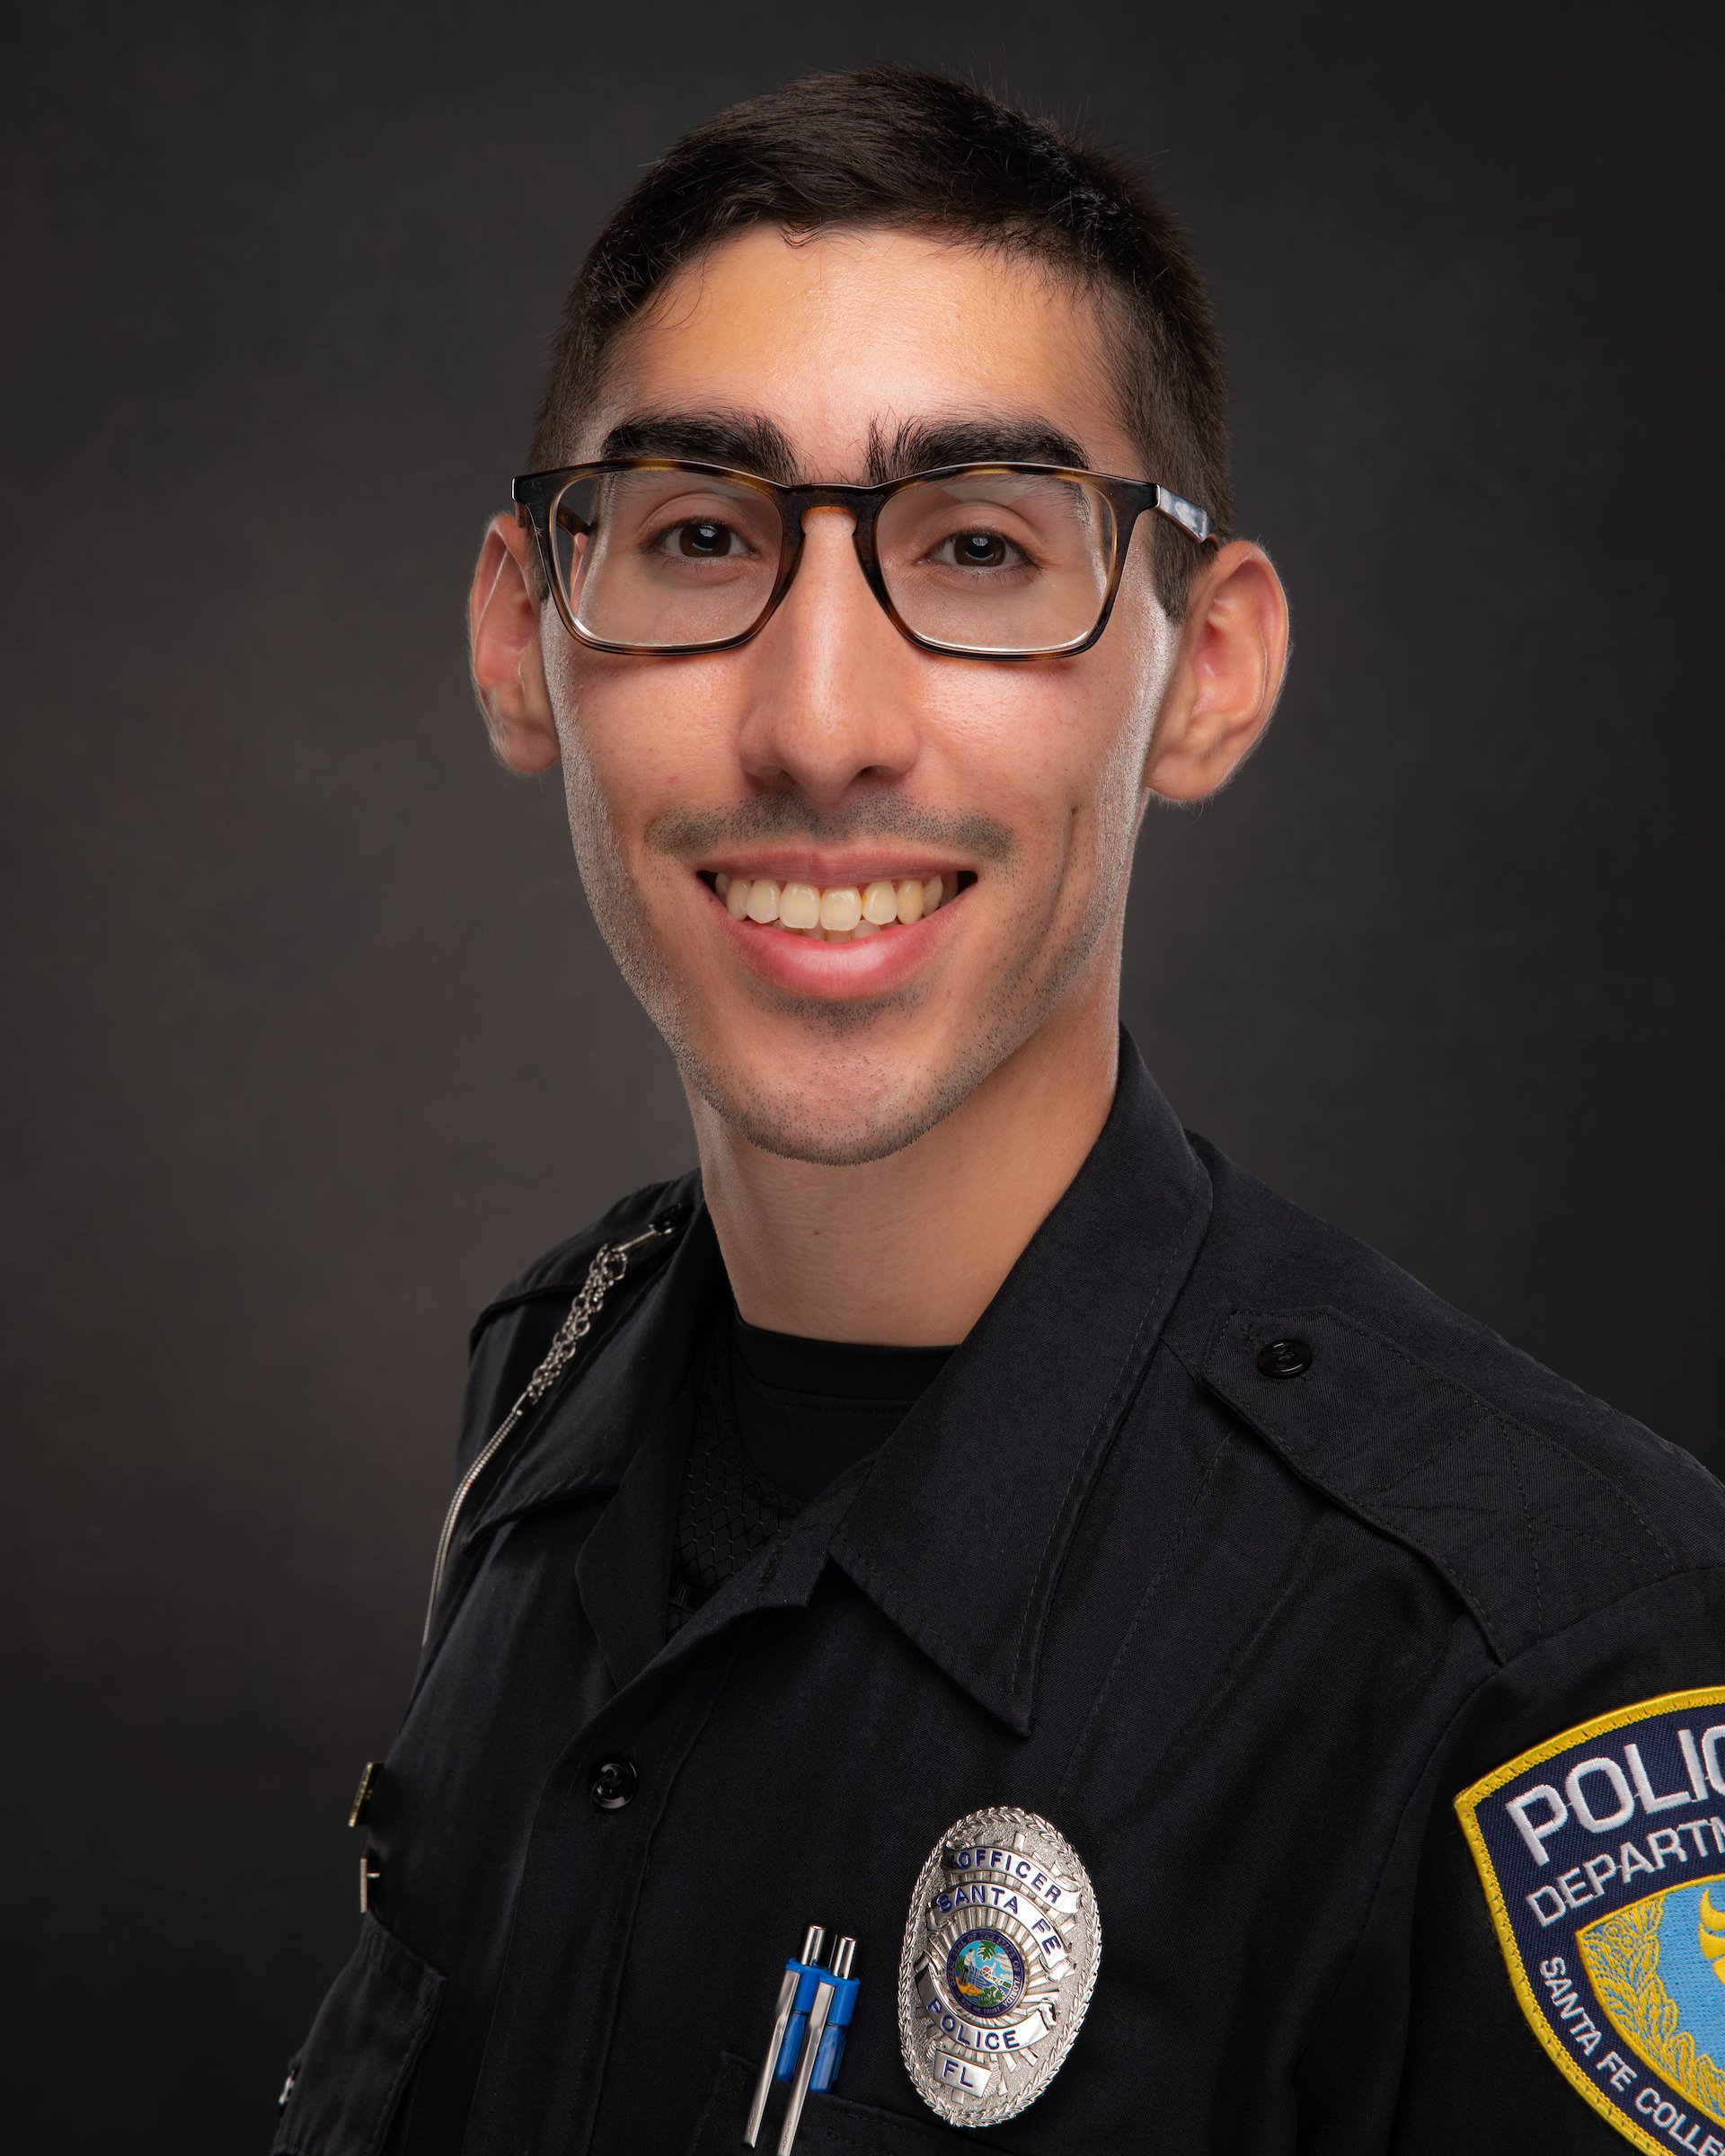 Officer Diego Posada